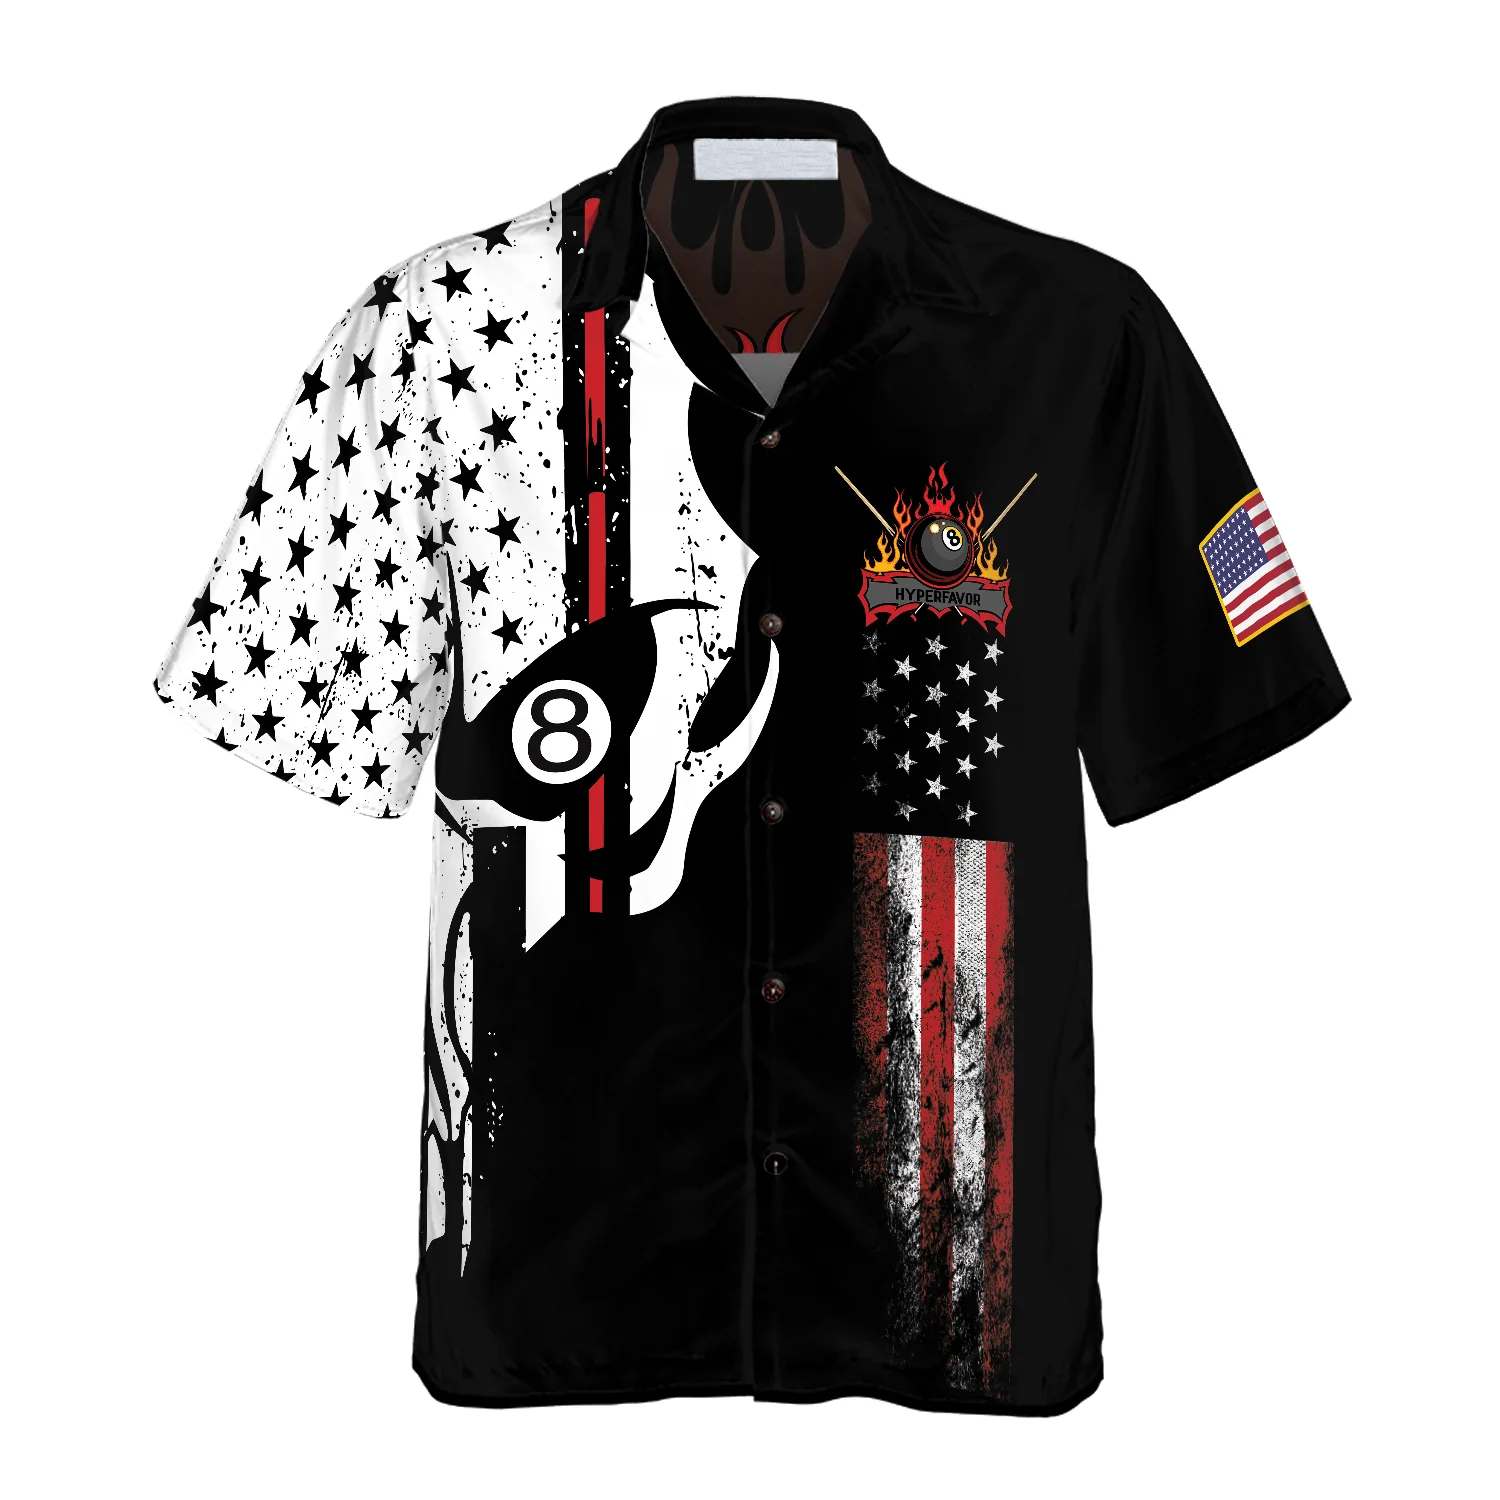 Skull Billiards Pool Hawaiian Shirt/ Flag American Skull Billiard Shirt/ Uniform Shirt Billiard Player